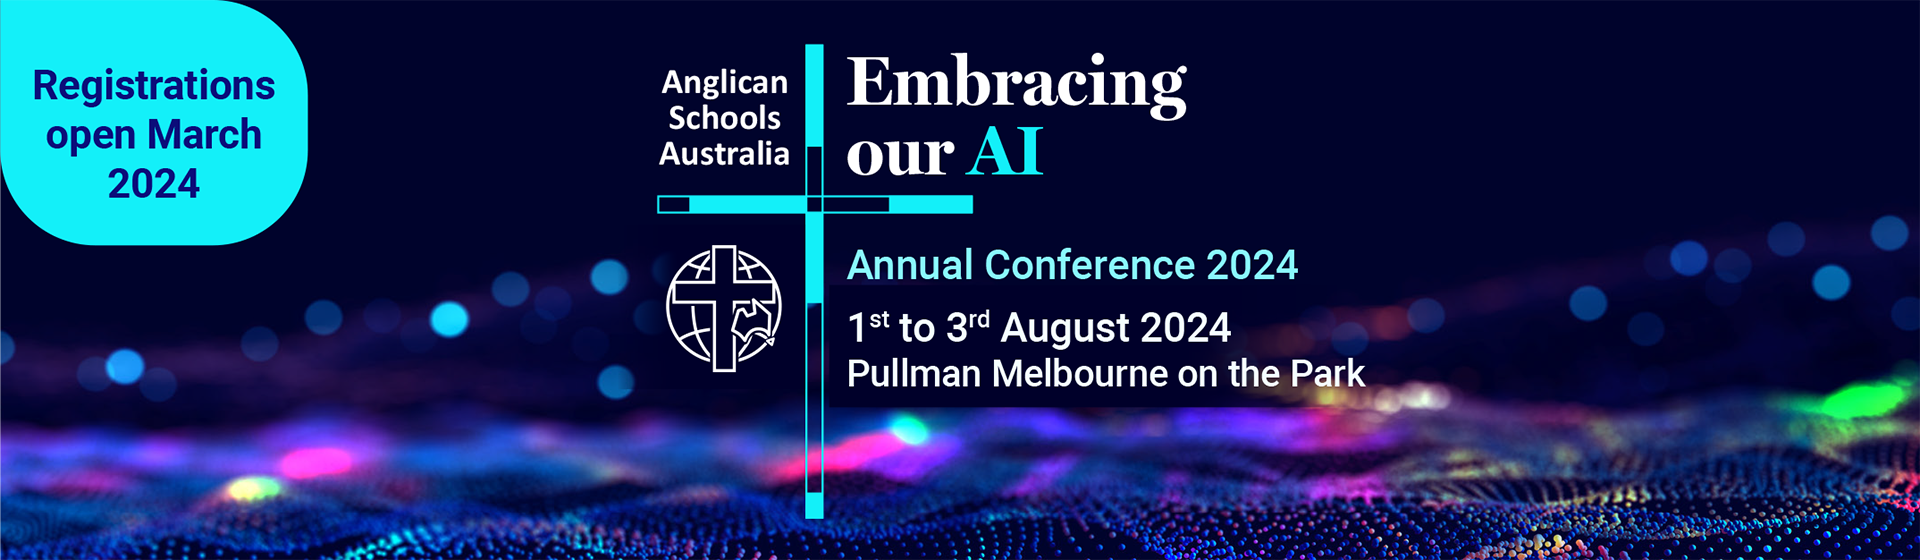 2024 Conference Anglican Schools Australia